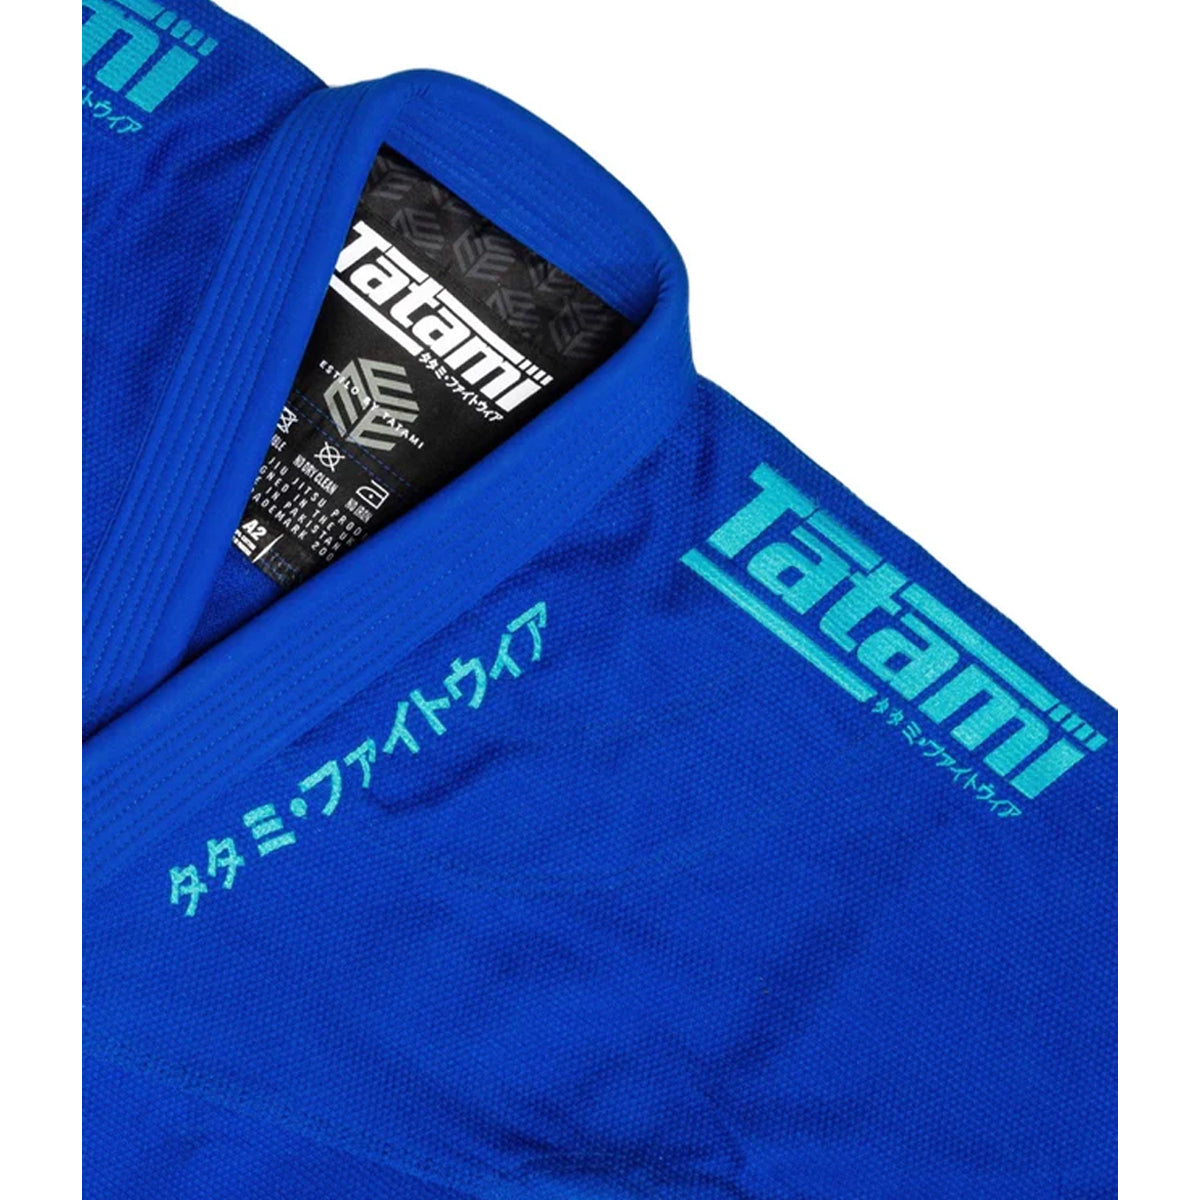 Tatami Fightwear Estilo Black Label BJJ Gi - Blue/Blue Tatami Fightwear